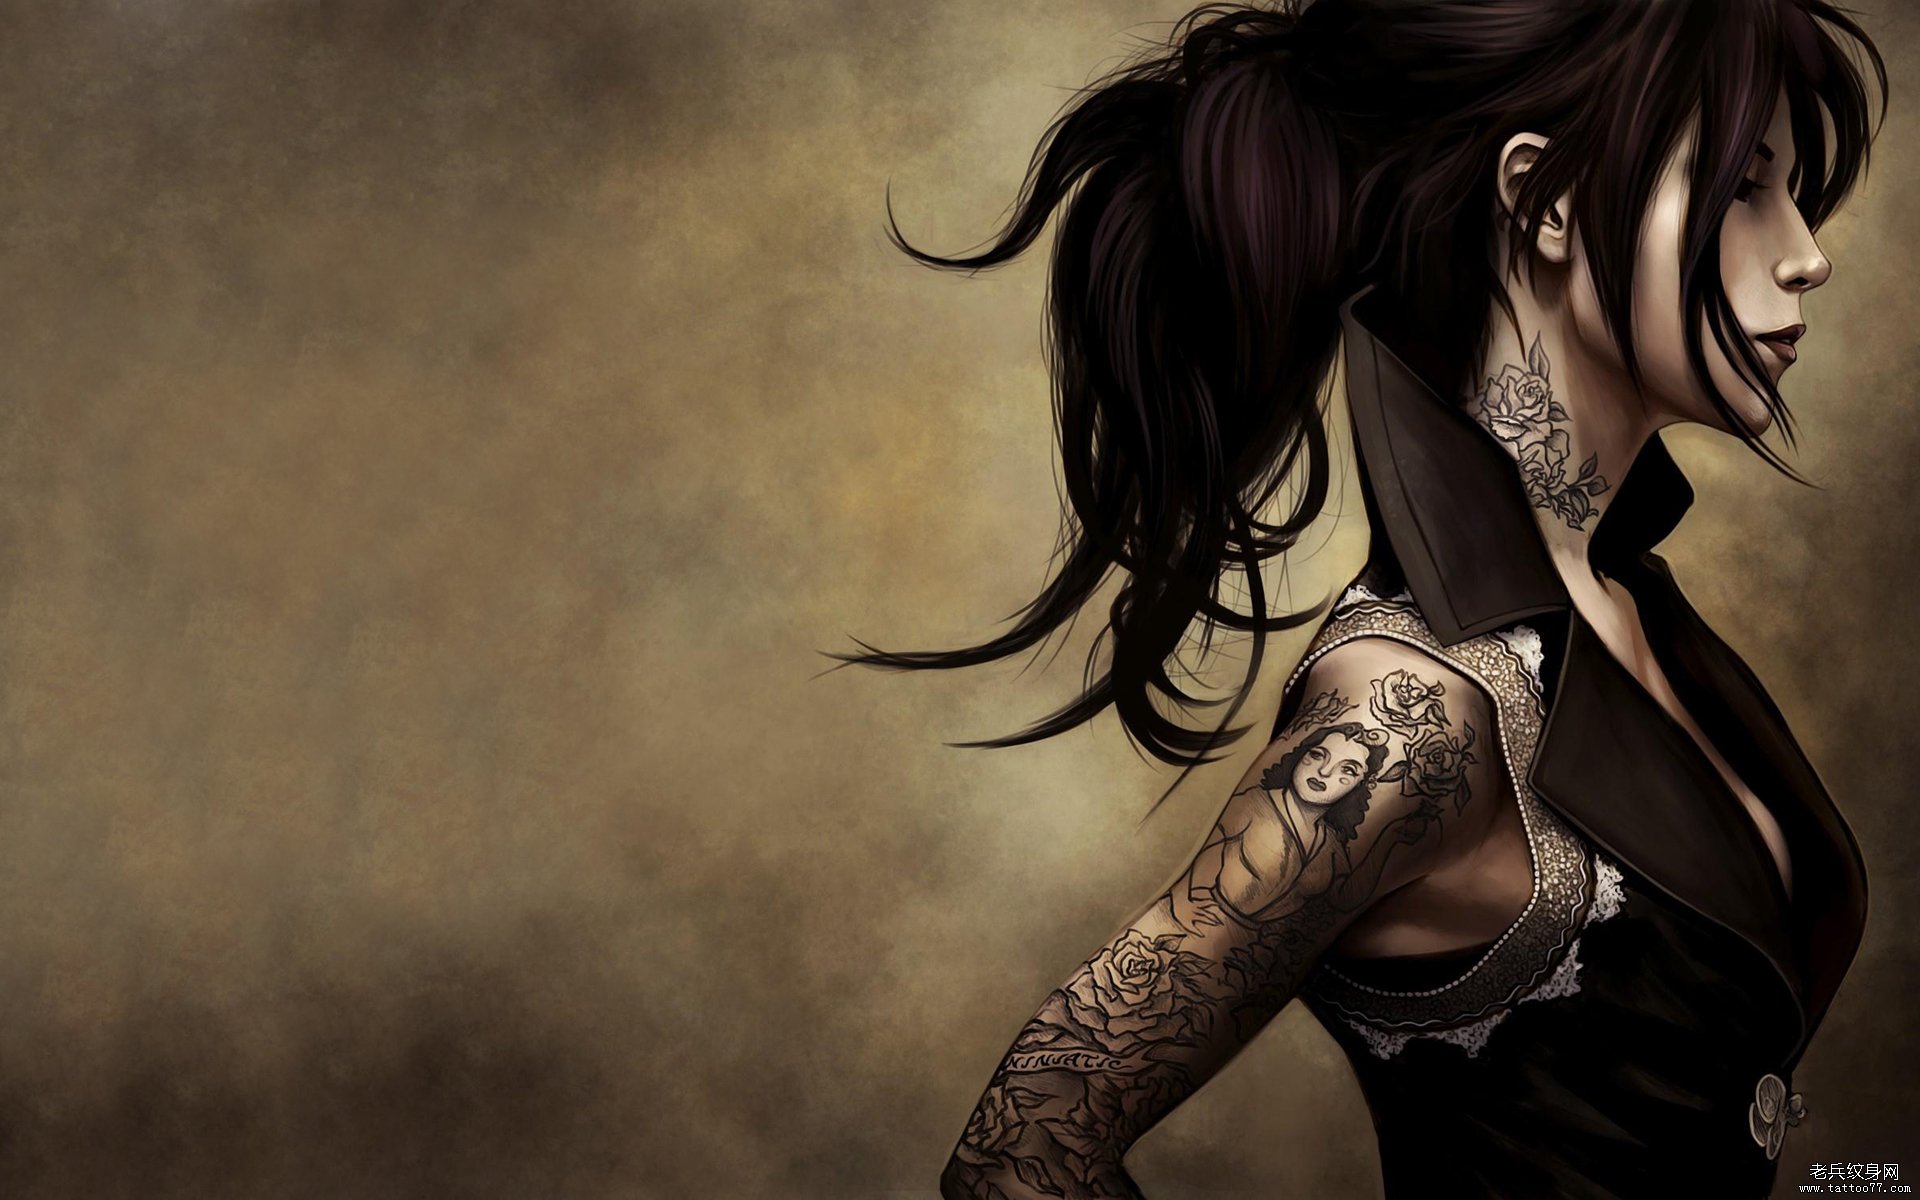 2014年高清纹身插画壁纸桌面下载硬朗的女人图片系列